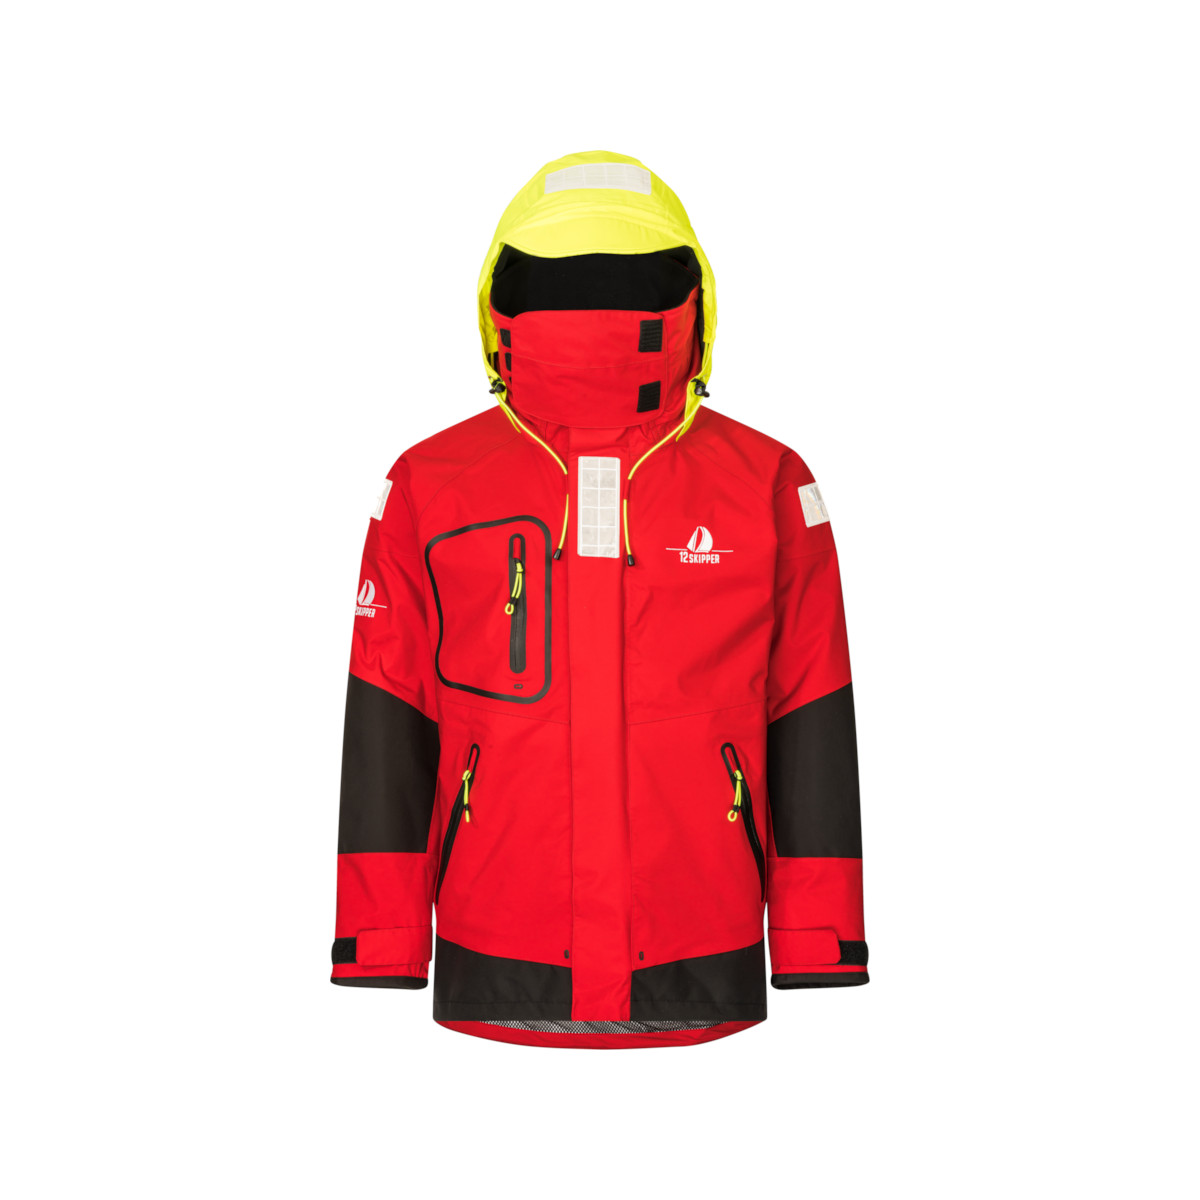 12skipper Magellan veste de quart hauturière, unisexe - rouge, taille XL